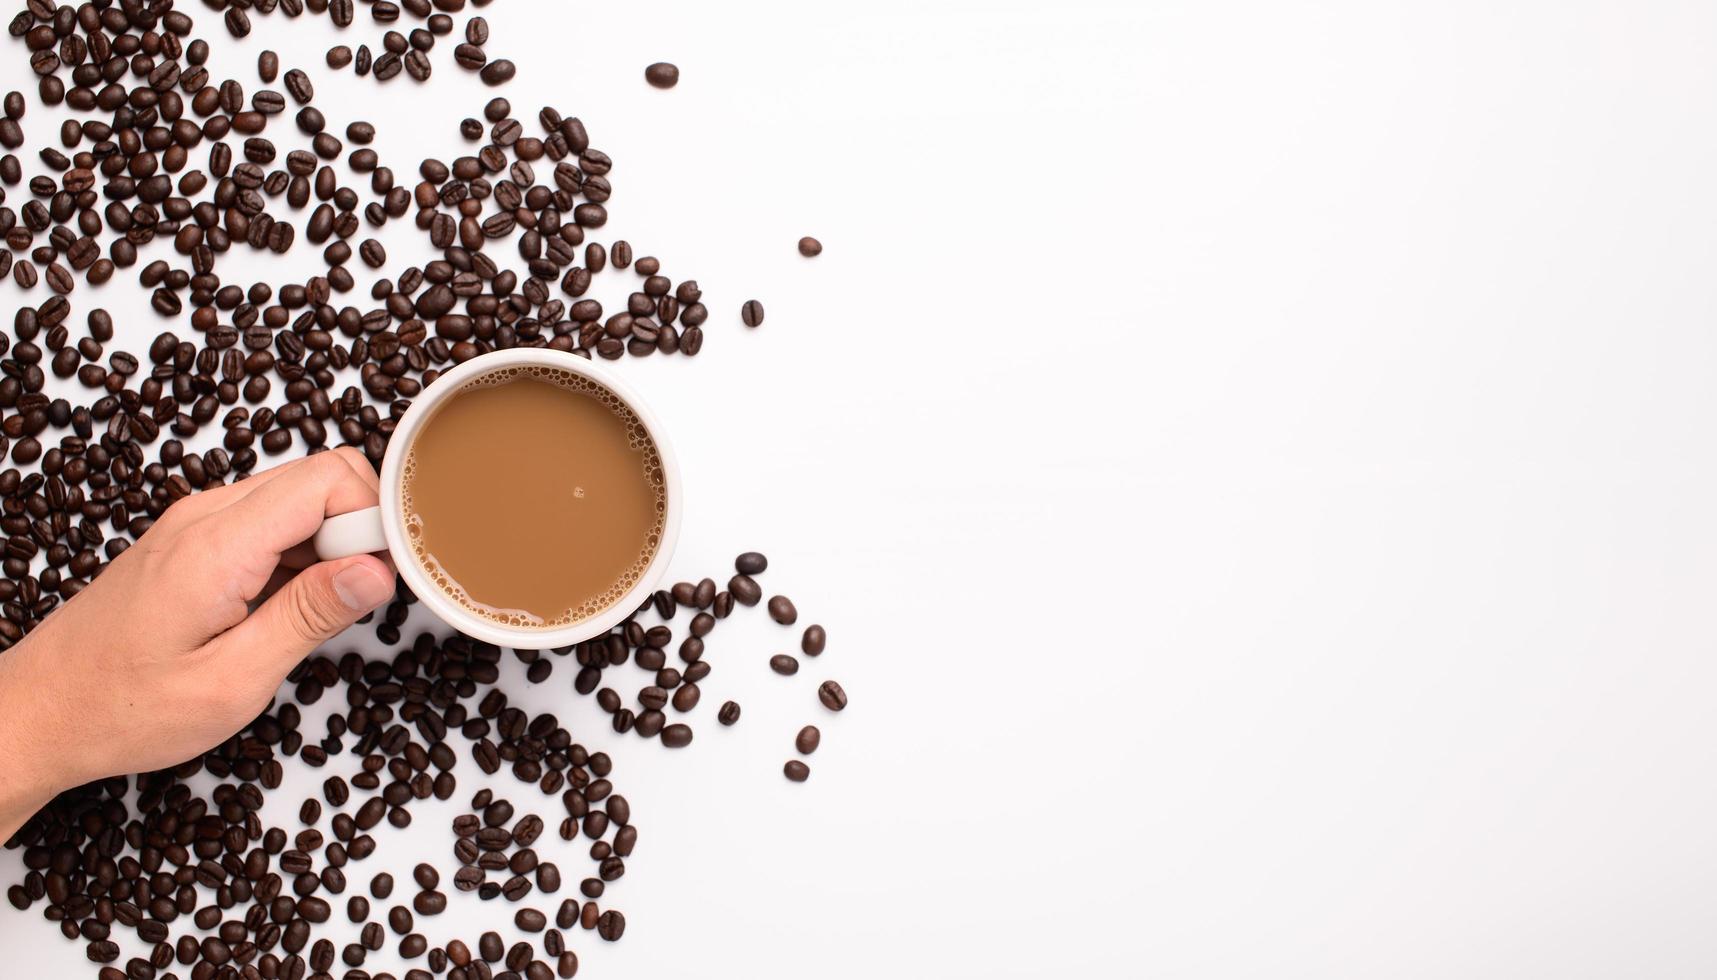 tazza di caffè, chicchi di caffè, scena di sfondo bianco foto